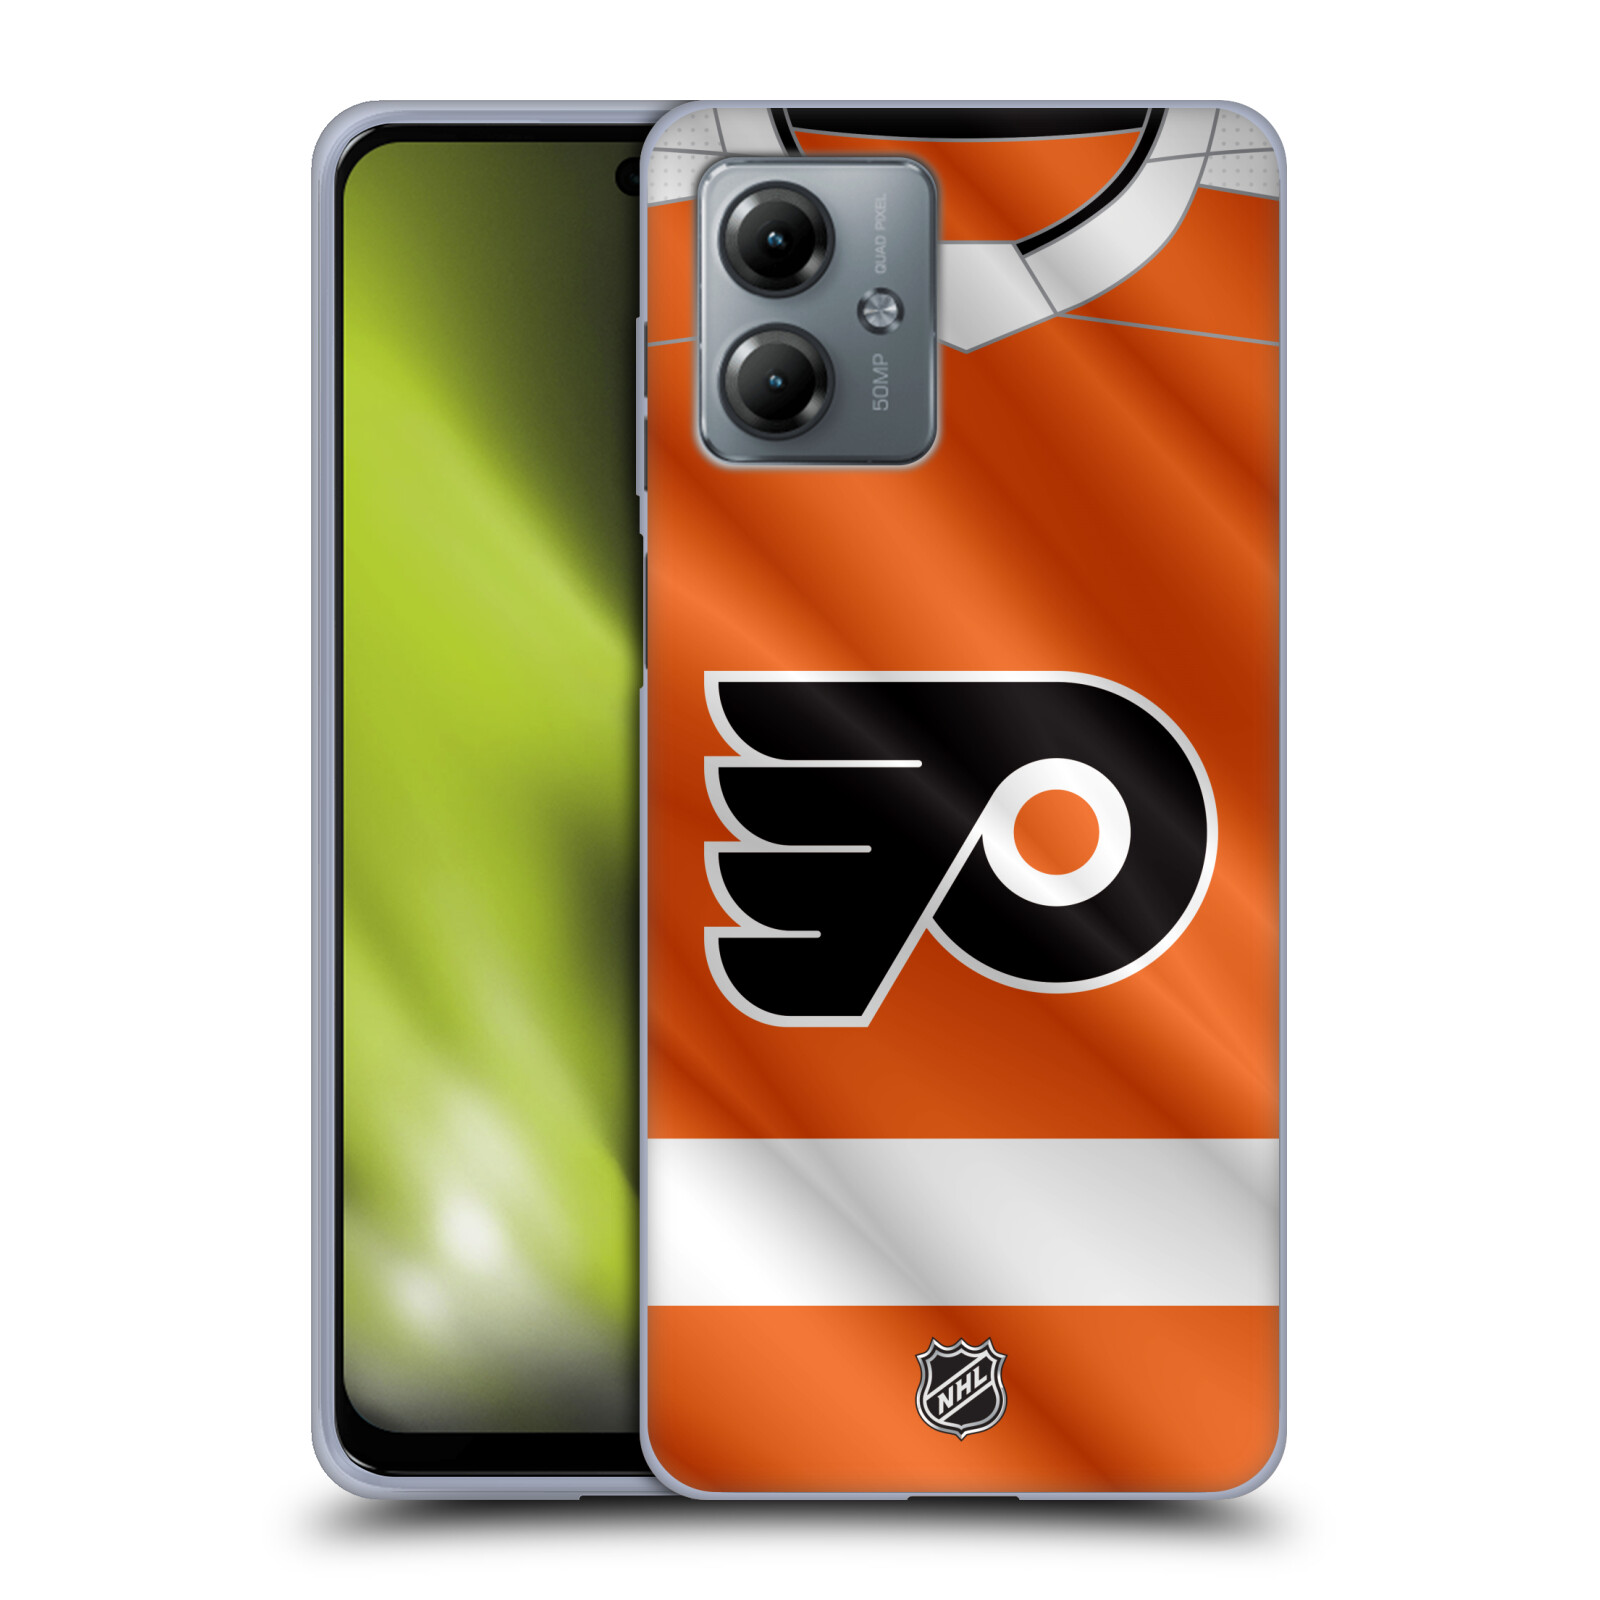 Silikonové pouzdro na mobil Motorola Moto G14 - NHL - Dres Philadelphia Flyers (Silikonový kryt, obal, pouzdro na mobilní telefon Motorola Moto G14 s licencovaným motivem NHL - Dres Philadelphia Flyers)